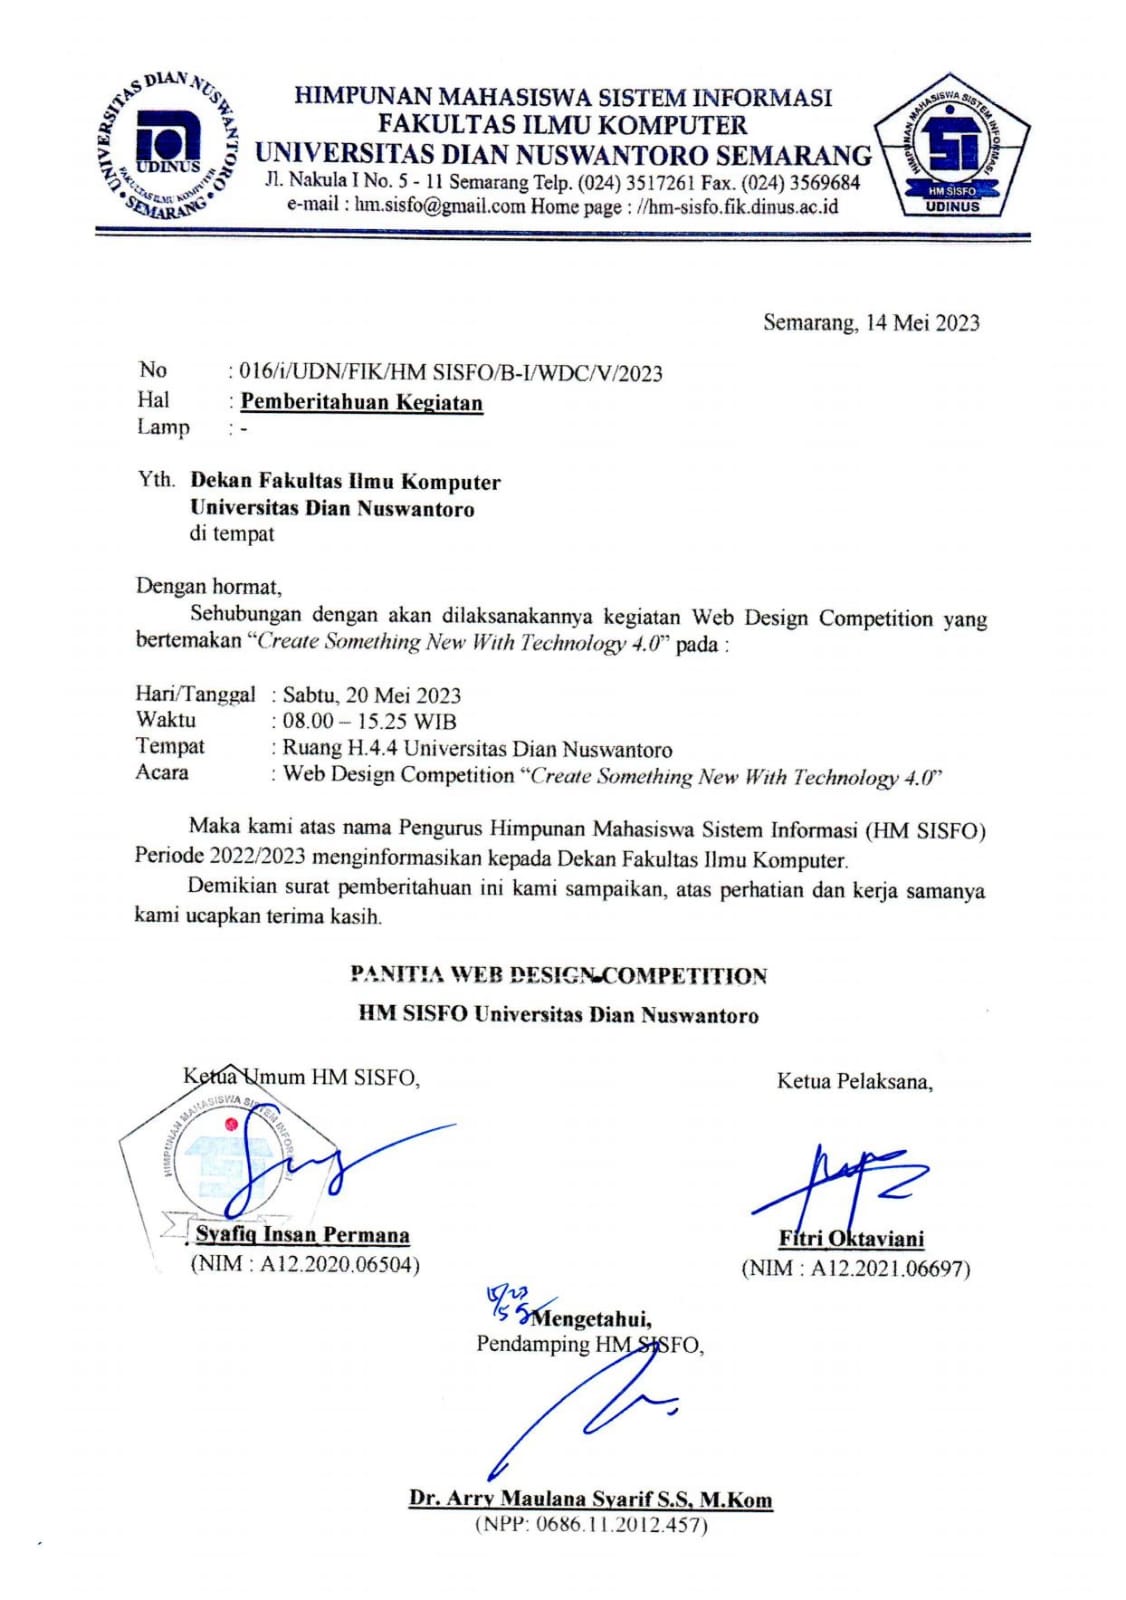 Surat Pemberitahuan Kegiatan Dekan Fakultas Ilmu Komputer Universitas Dian Nuswantoro